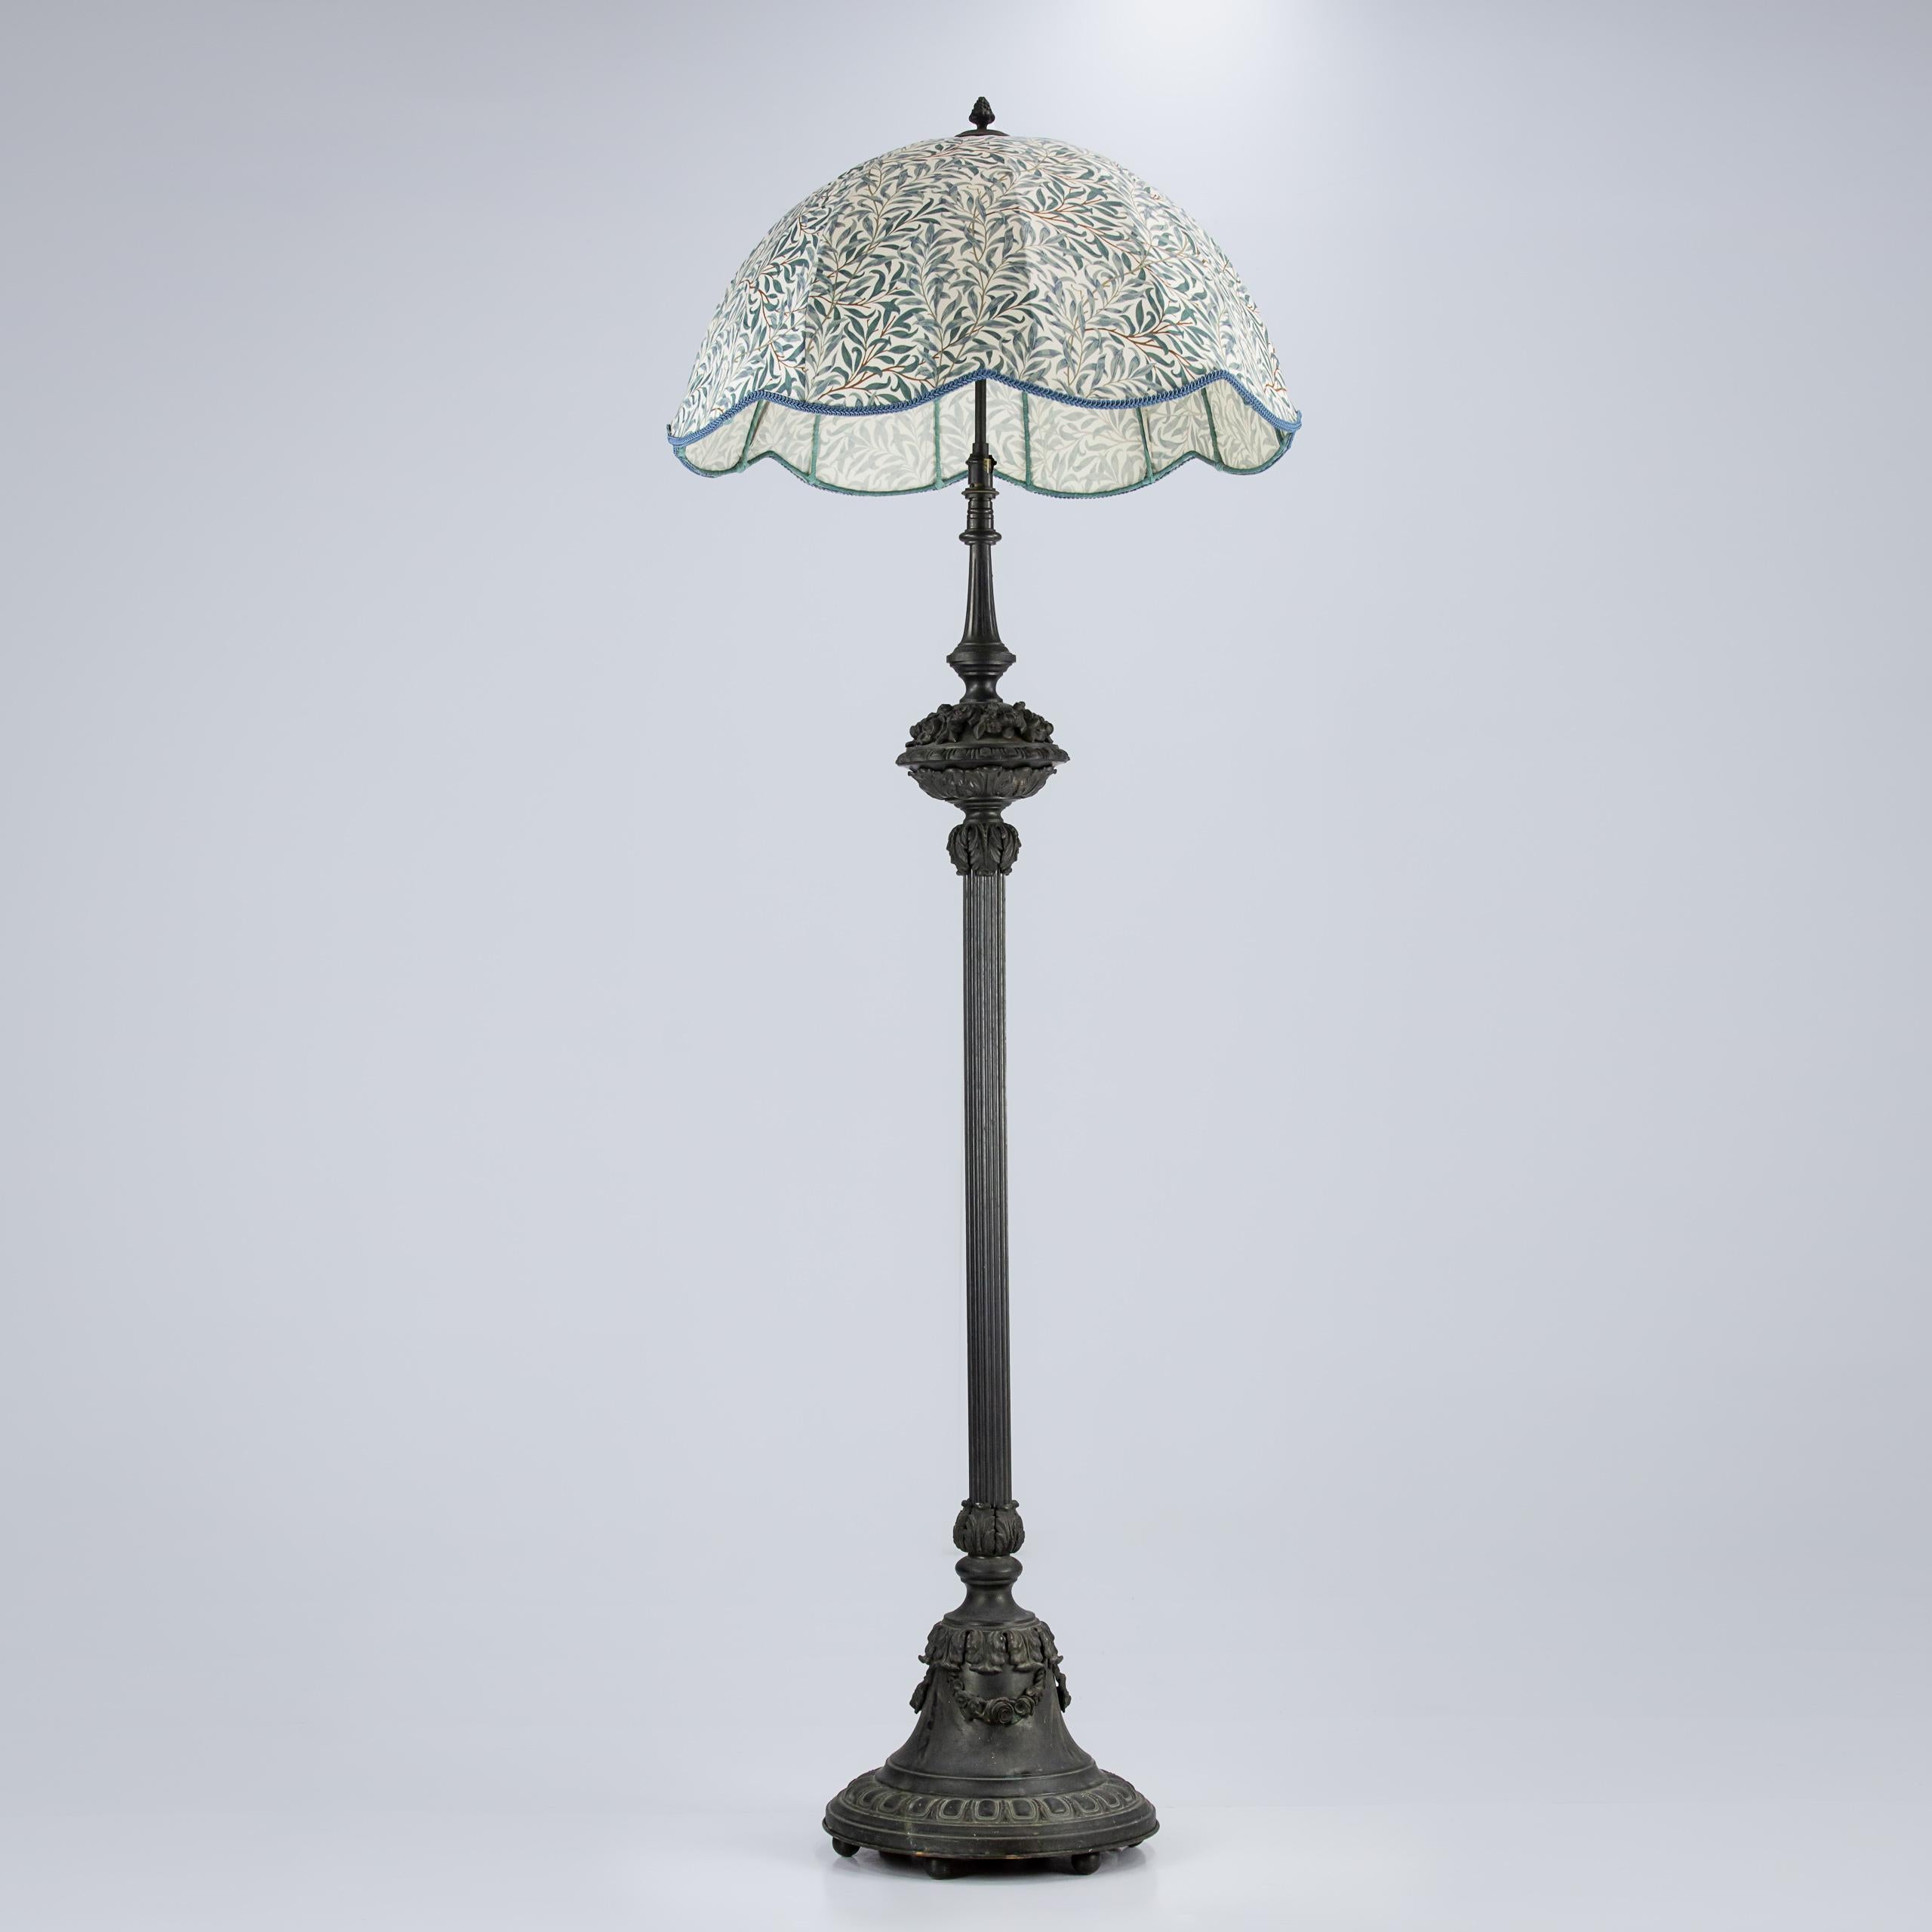 Beeindruckende Stehlampe aus Bronze mit riesigem, maßgefertigtem William Morris-Lampenschirm mit Weidengeflecht.

Neu verdrahtet im antiken Stil flex, PAT getestet.

Frankreich 1860. Schwer.